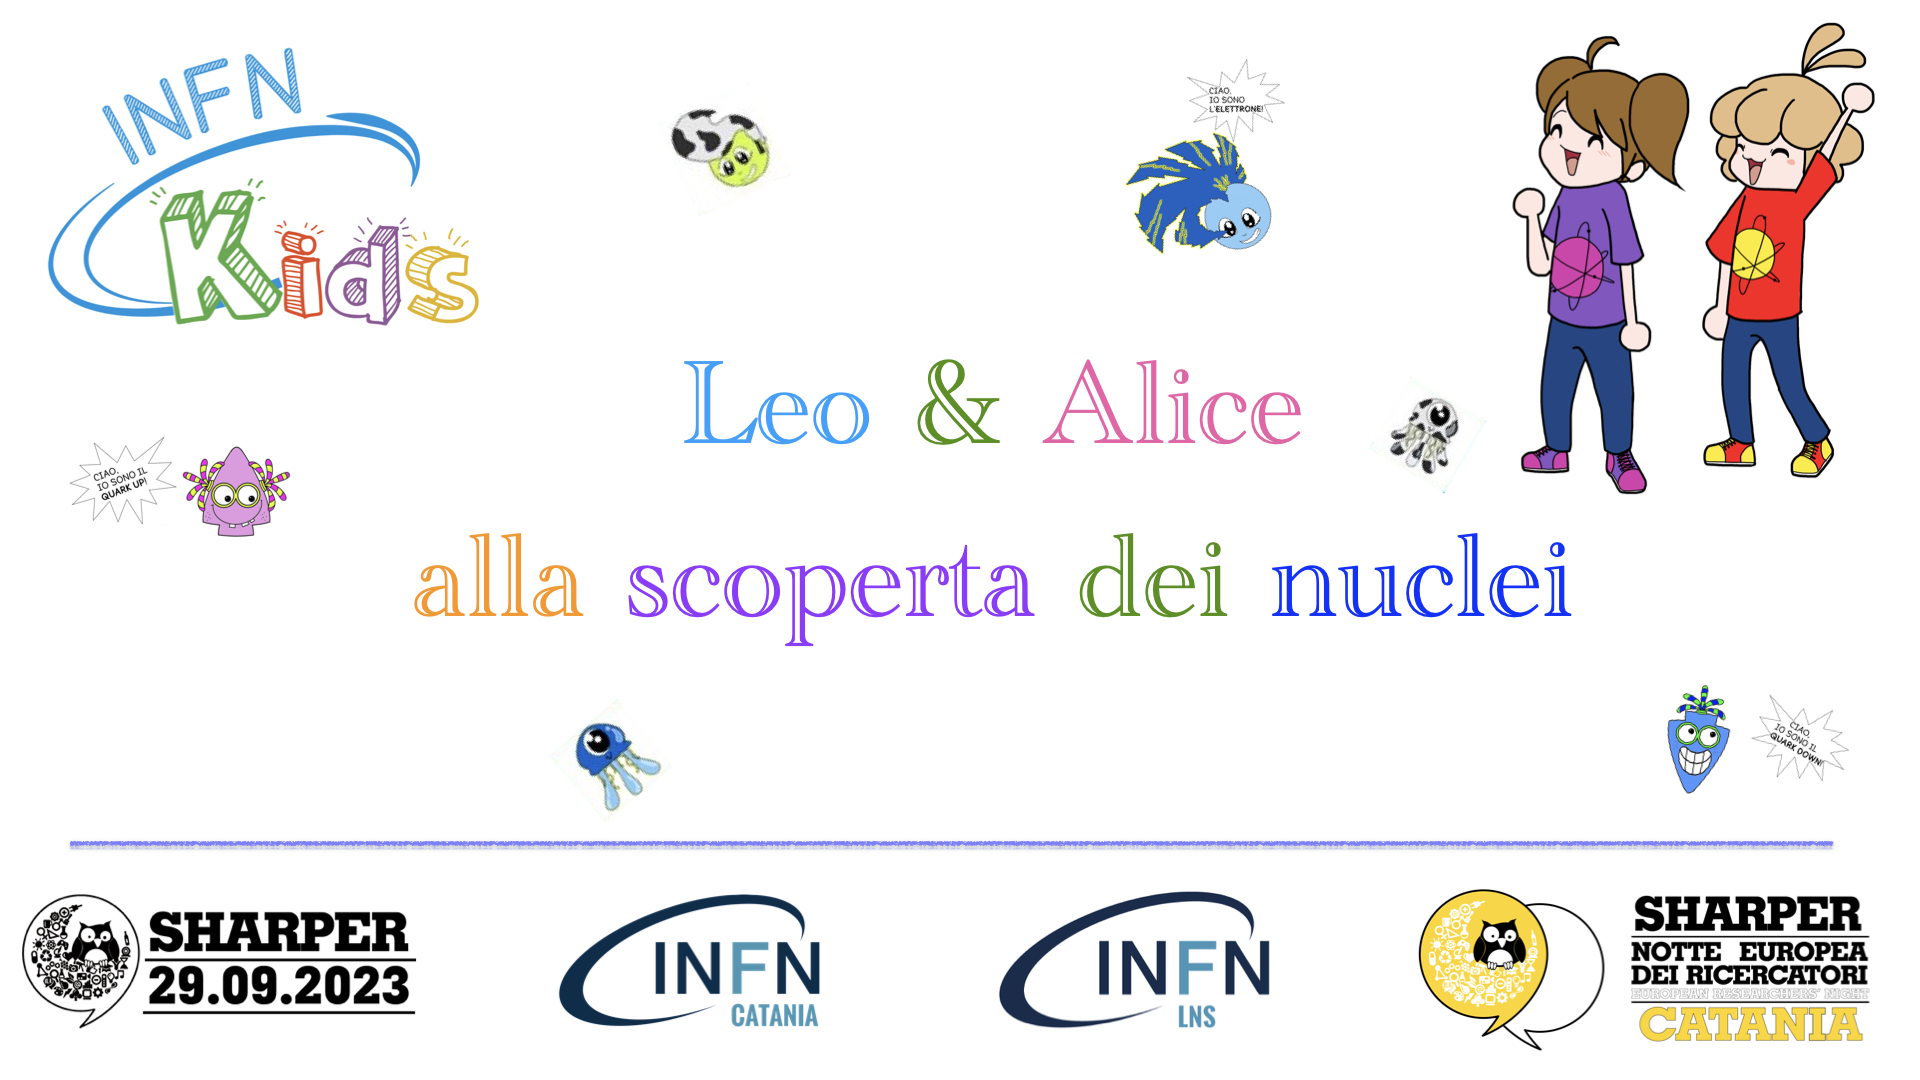 INFN Laboratori Nazionali del Sud, INFN Sezione di Catania